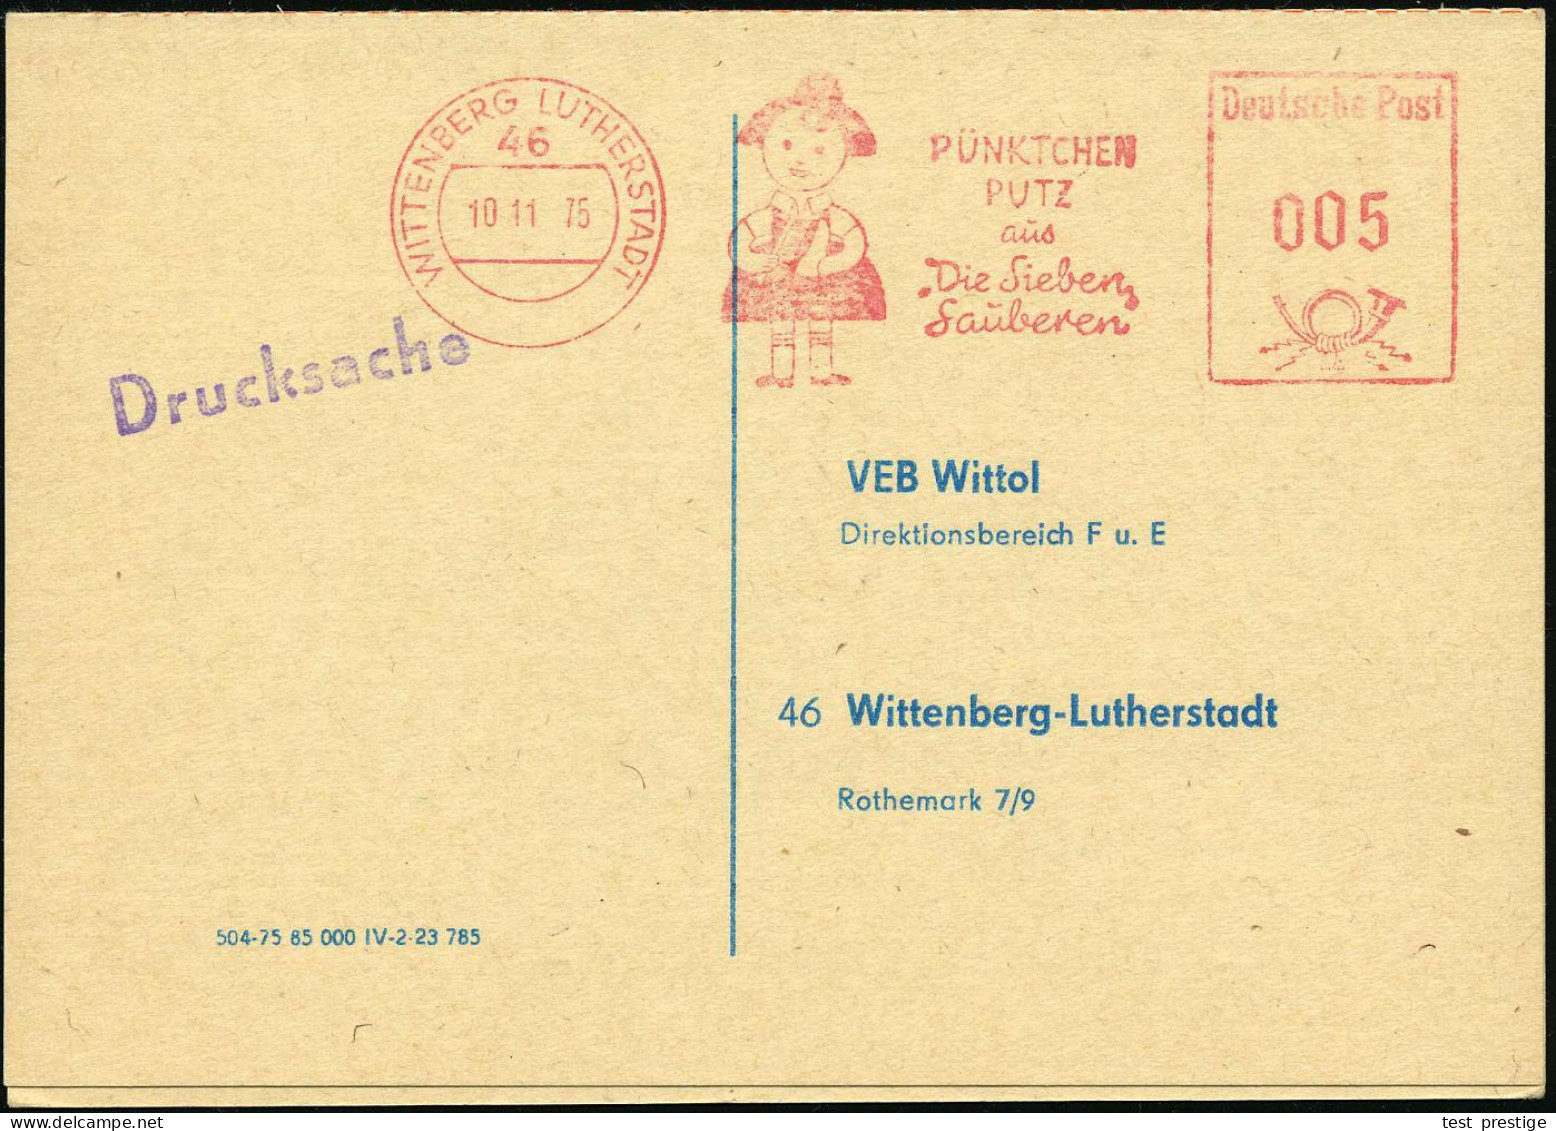 46 WITTENBERG LUTHERSTADT/ PÜNKTCHEN/ PUTZ/ Aus/ "Die Sieben/ Sauberen" 1975 (10.11.) AFS Francotyp = Comic-Figur "Pünkt - Chimie